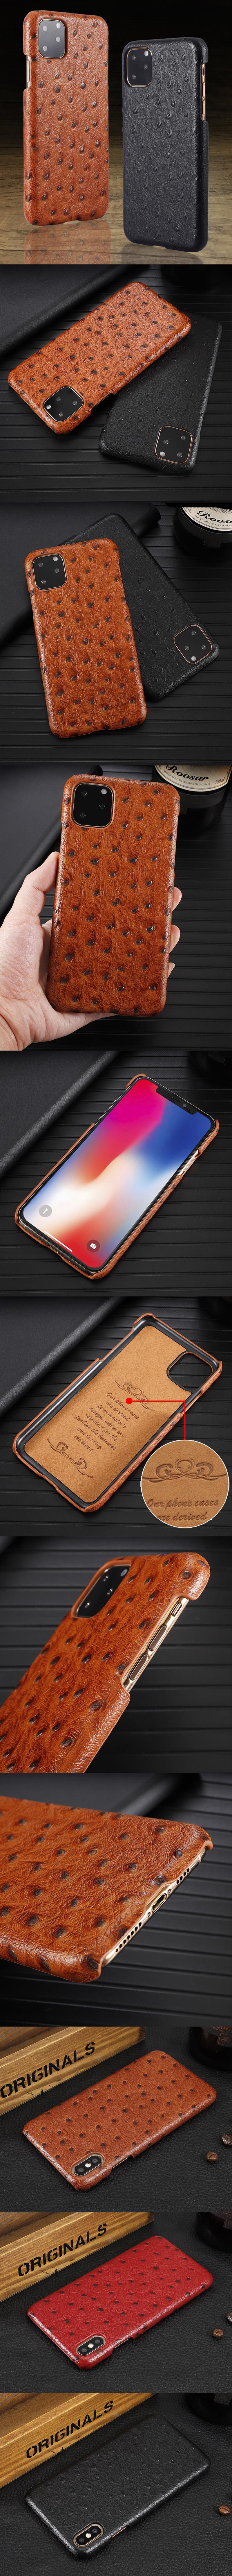 620-Apple-真皮鴕鳥紋造型手機殼背蓋